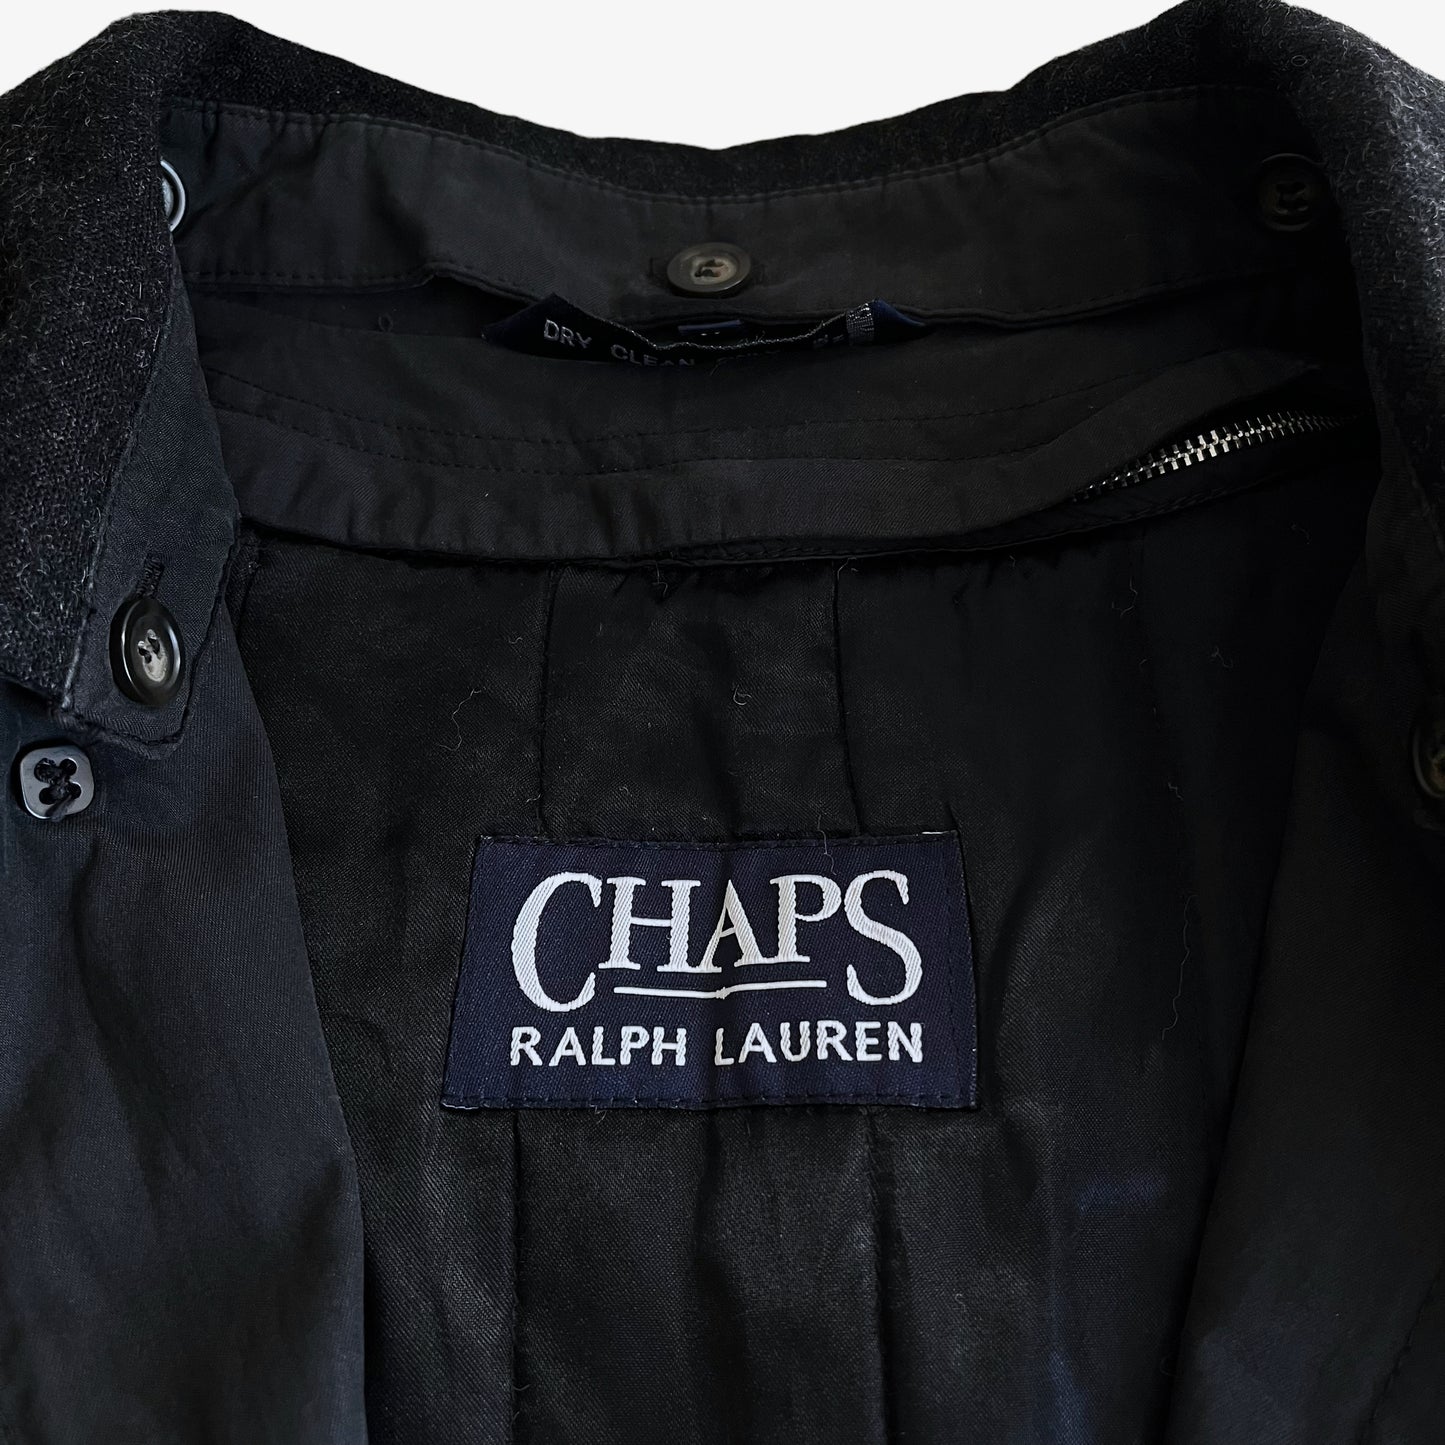 Vintage 90s Chaps Ralph Lauren Black Trench Coat Label - Casspios Dream